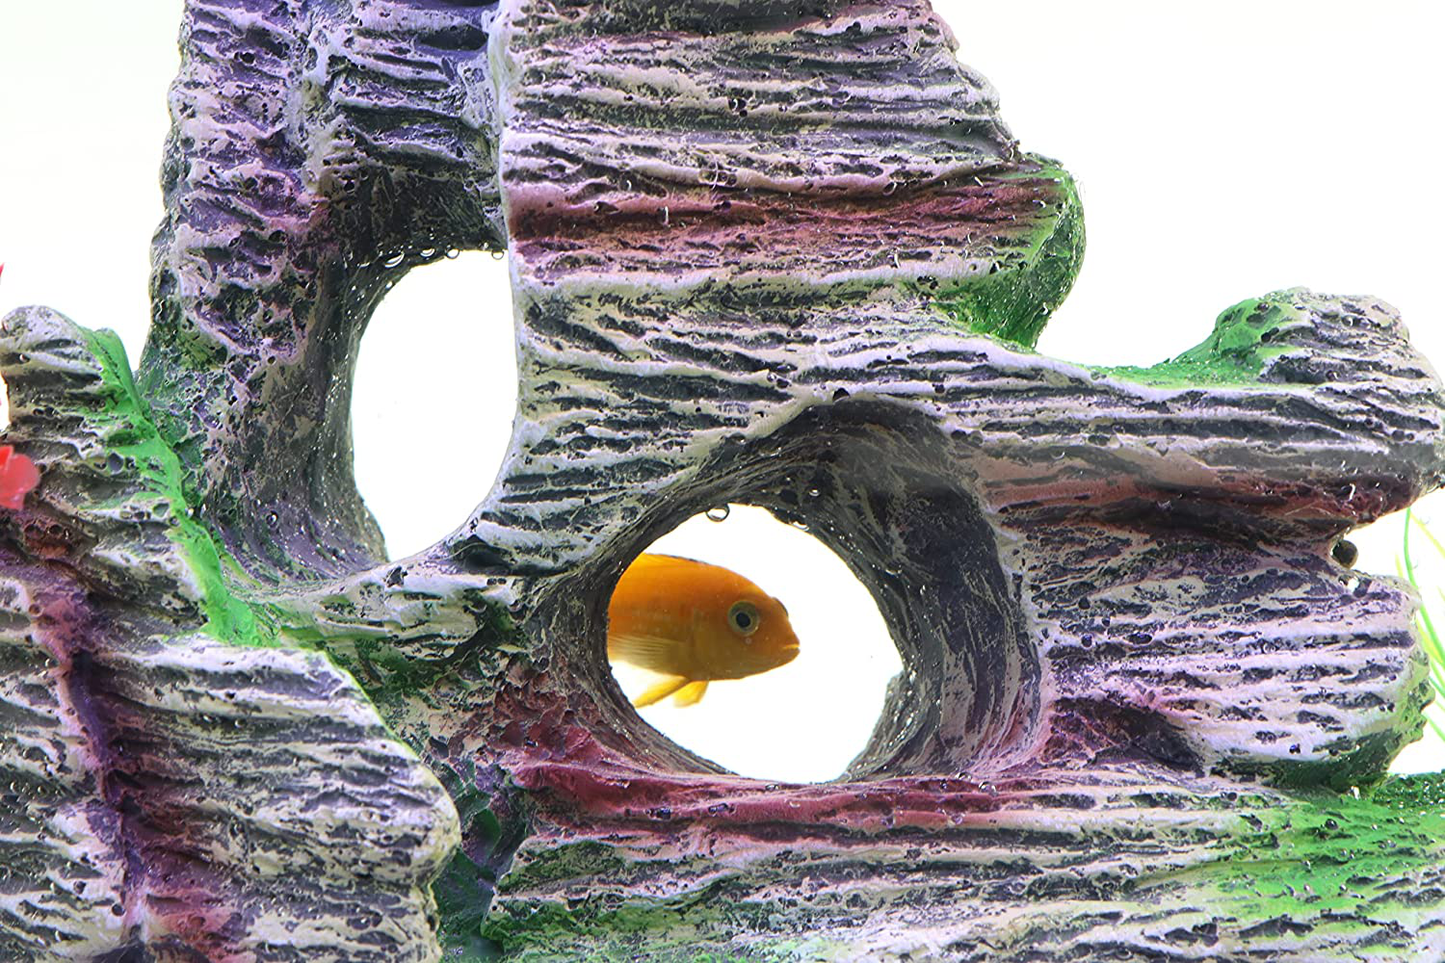 AQUA KT Aquarium Landscape Mountain View Cave Rock Decoration Fish Tank Ornament，Made of Resin Animals & Pet Supplies > Pet Supplies > Fish Supplies > Aquarium Decor AQUA KT   